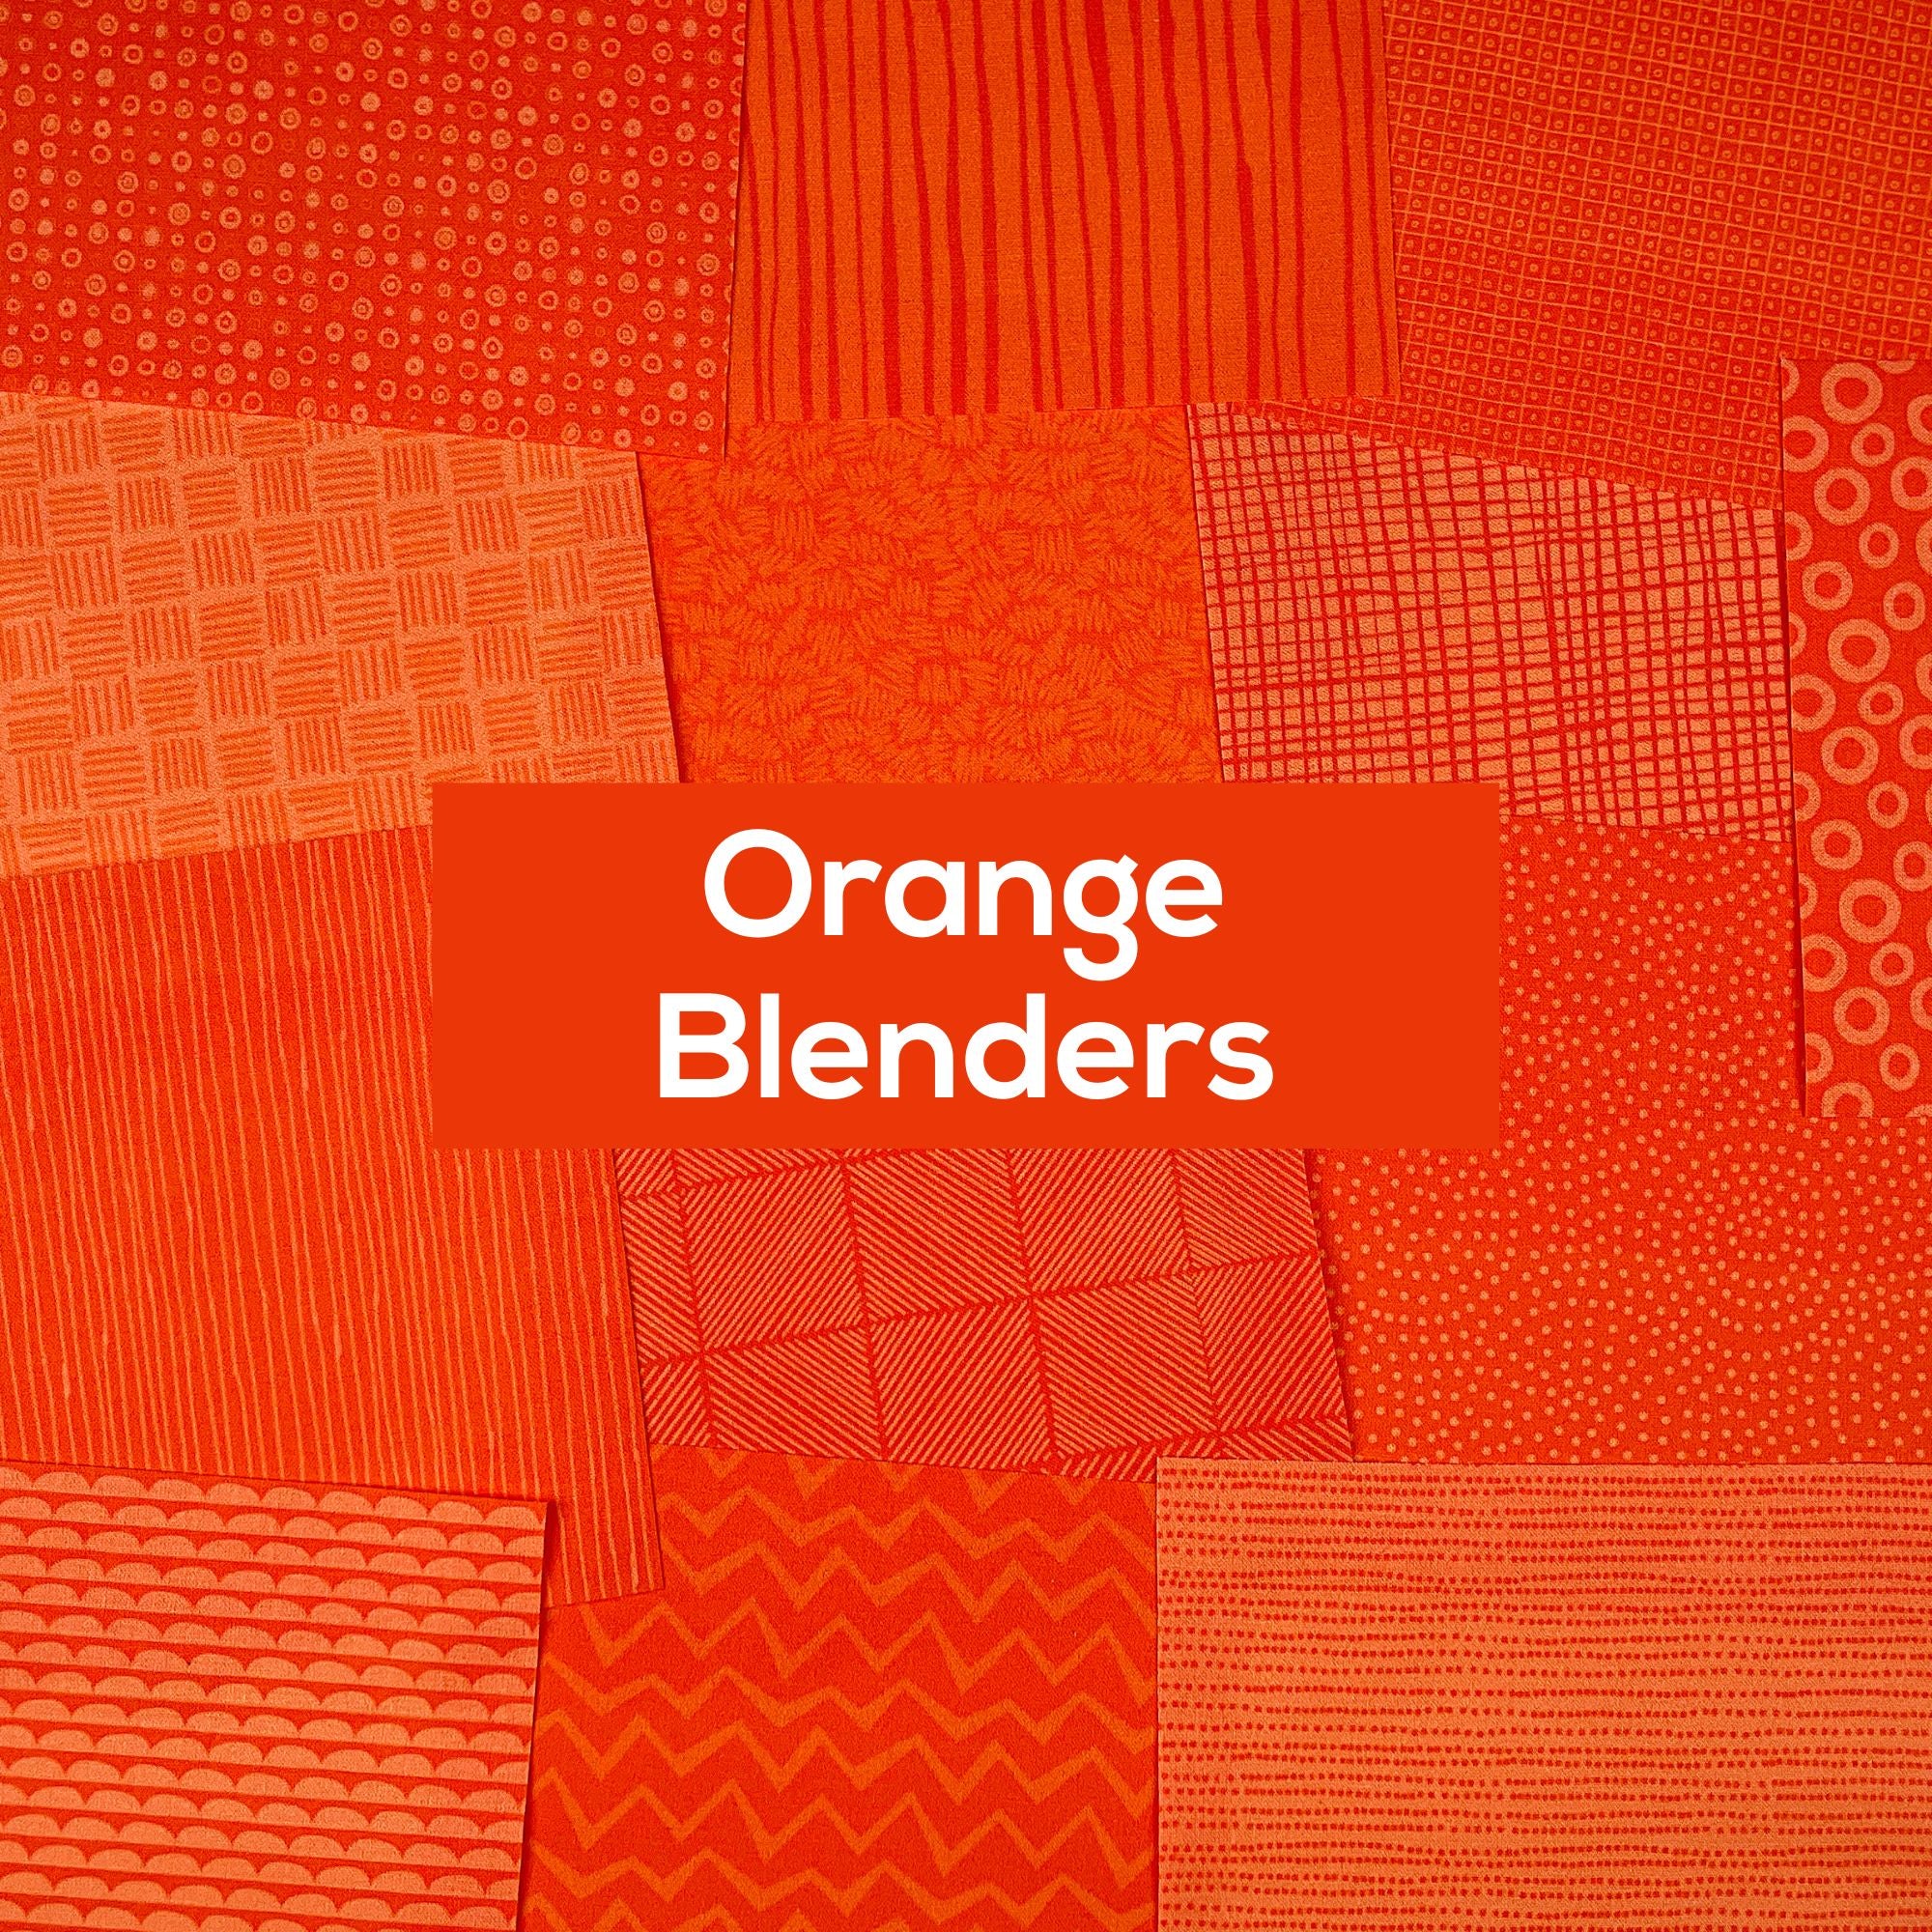 Orange Blenders